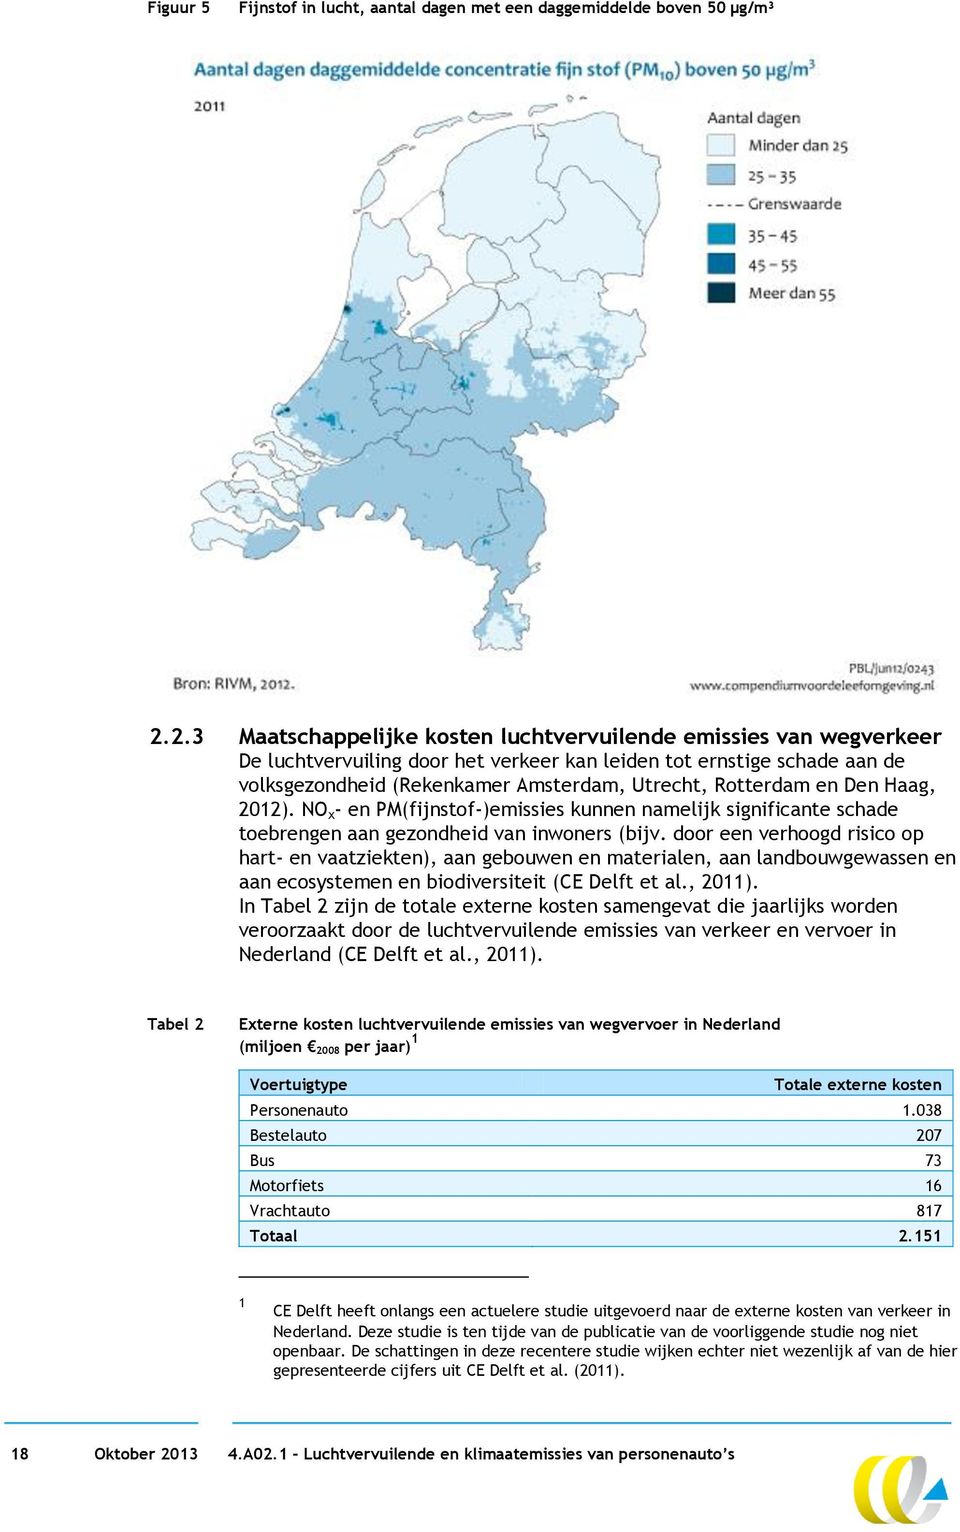 Rotterdam en Den Haag, 2012). NO x - en PM(fijnstof-)emissies kunnen namelijk significante schade toebrengen aan gezondheid van inwoners (bijv.